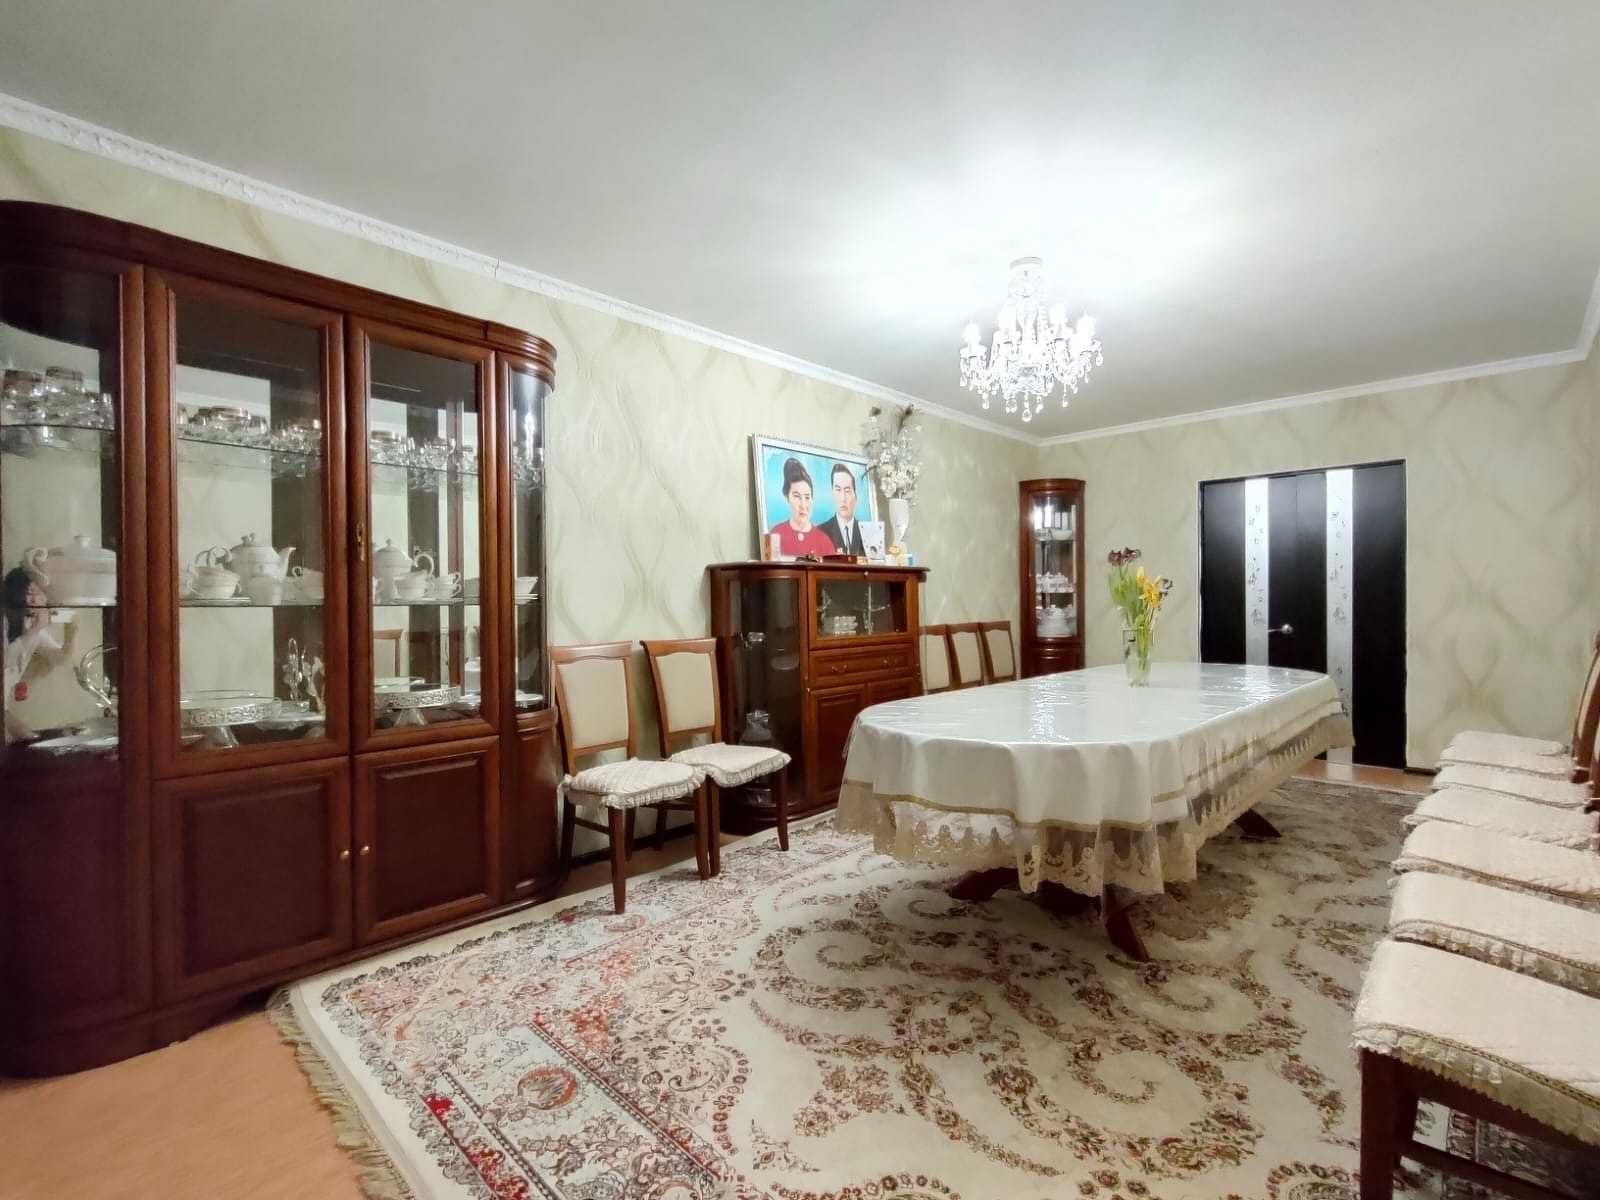 продам 3 комнатную квартиру в районе Болашак СРОЧНО ТОРГ